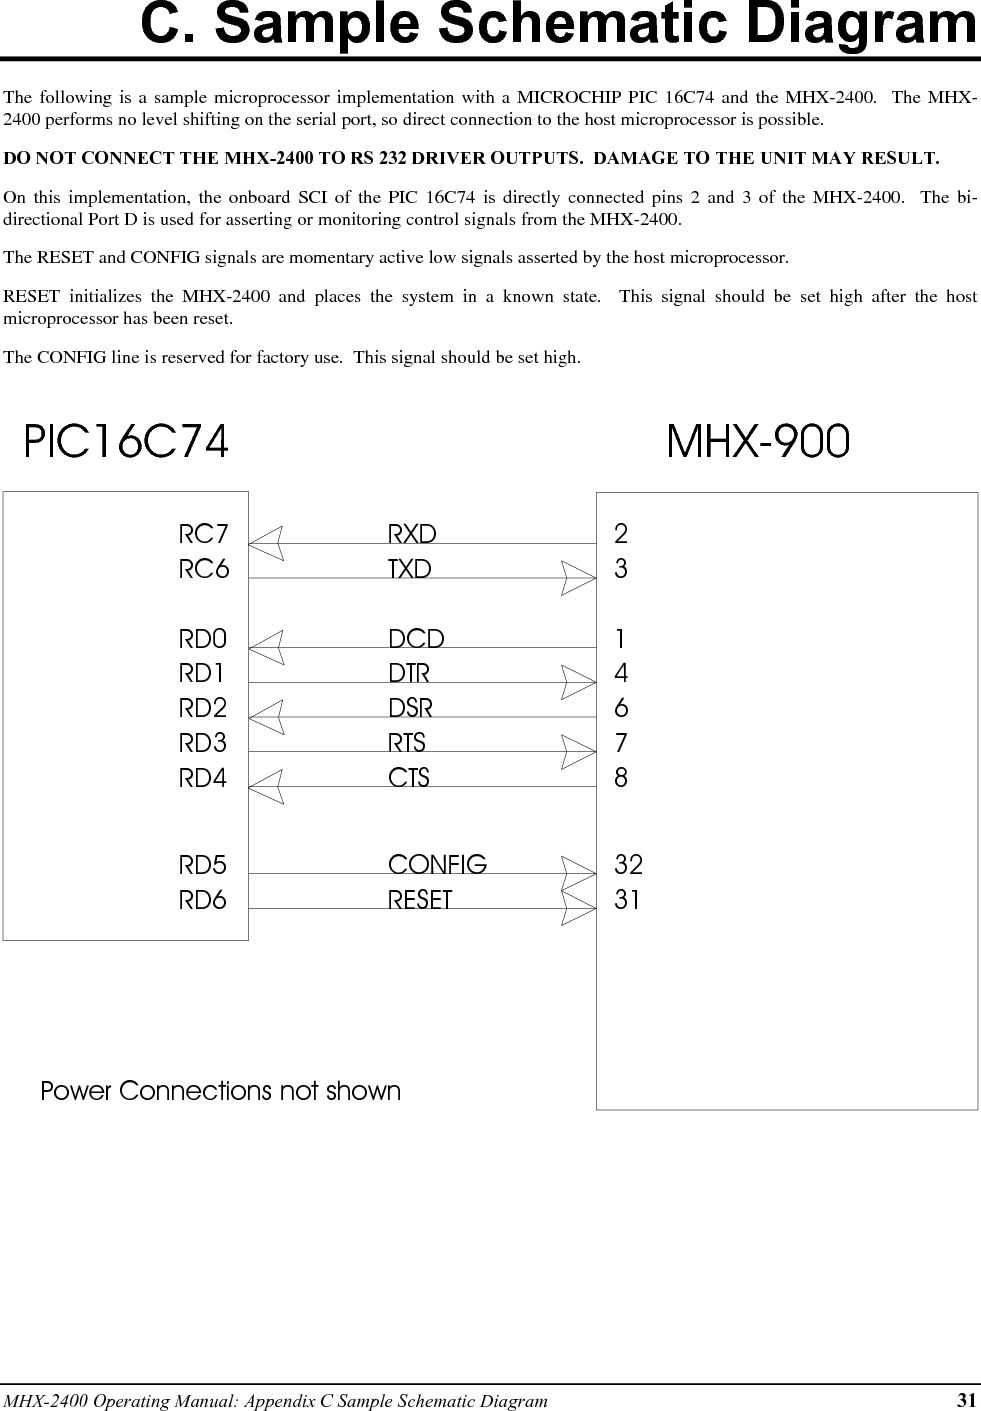 32 MHX-2400 Operating Manual: Appendix C Sample Schematic Diagram